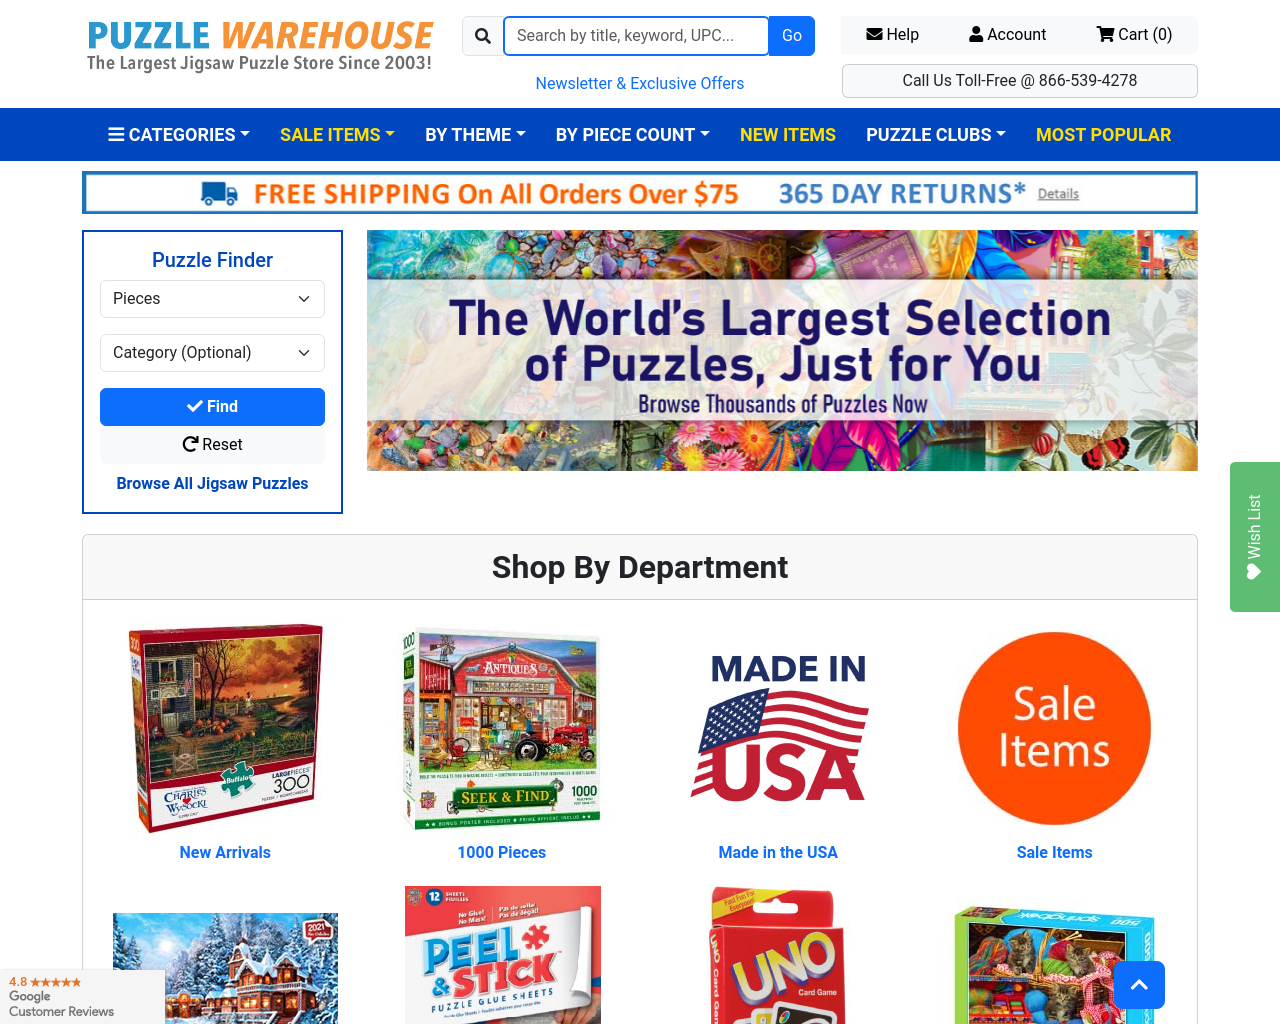 puzzlewarehouse.com